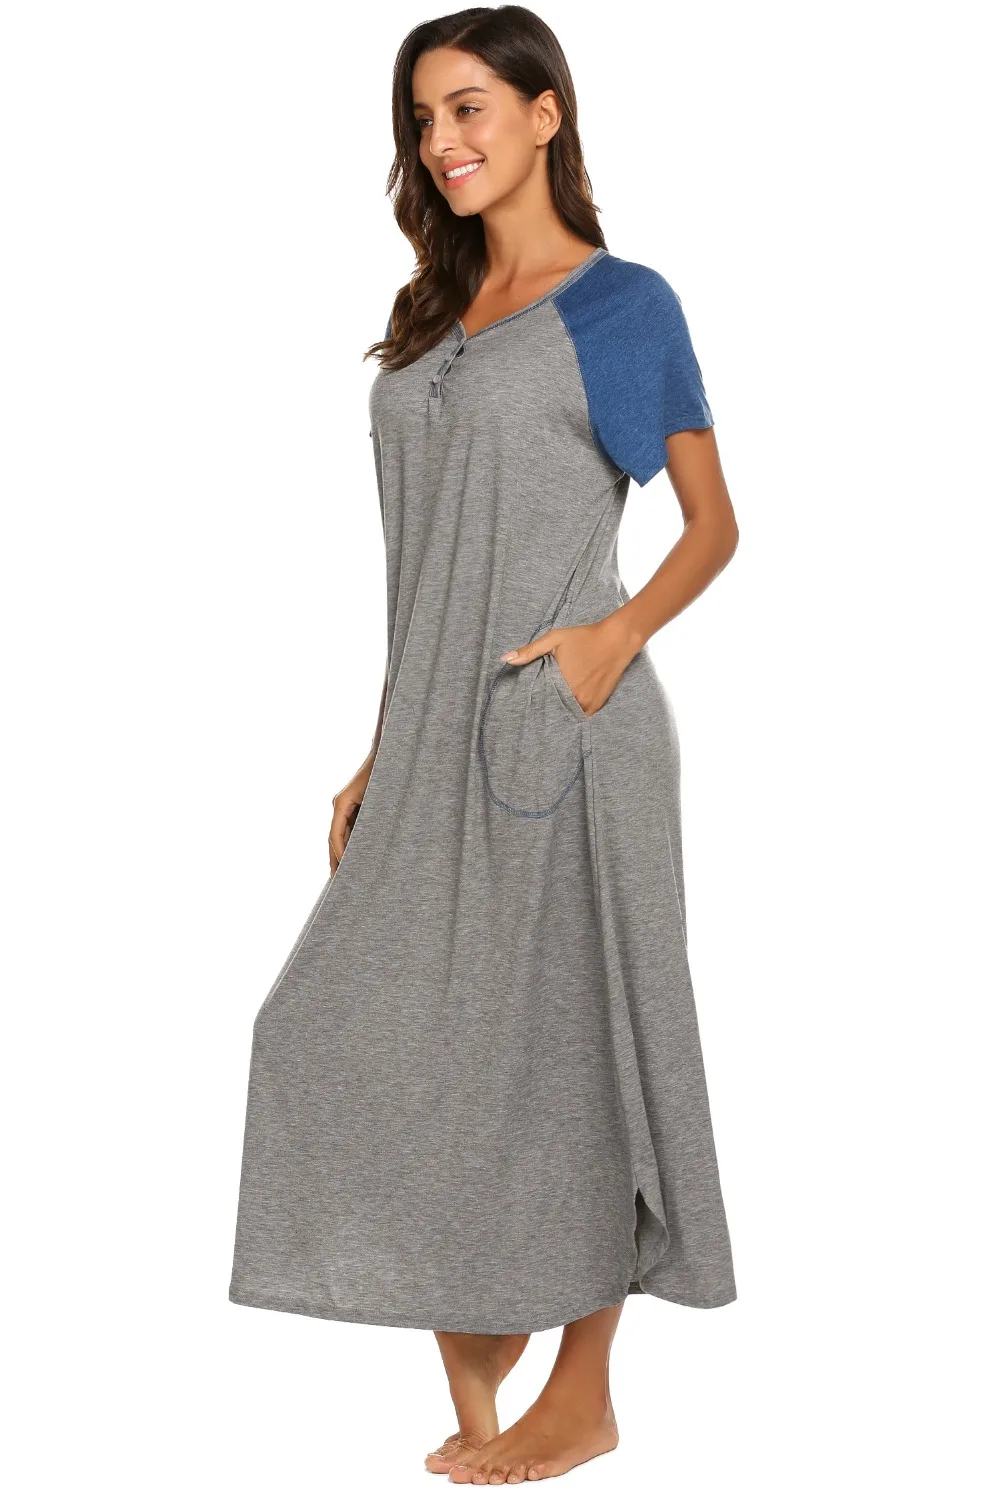 Ekouaer Для женщин Ночная сорочка пижамы платье v-образным вырезом короткий рукав Лоскутная Длинная Ночная сорочка ночная рубашка мягкая